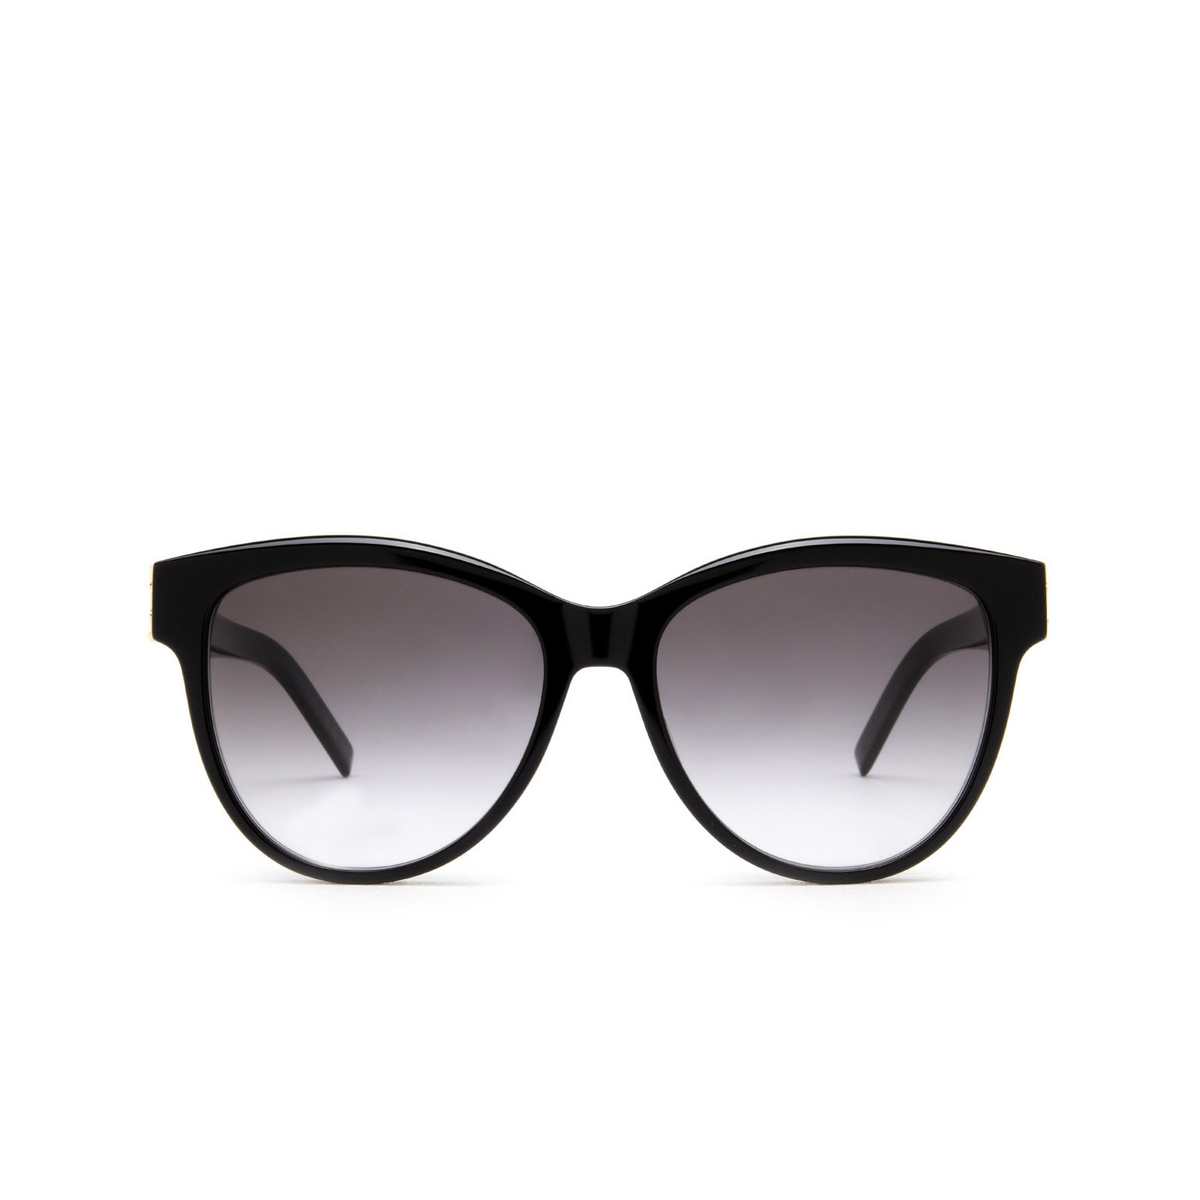 Saint Laurent SL M107 Sunglasses 002 Black - front view